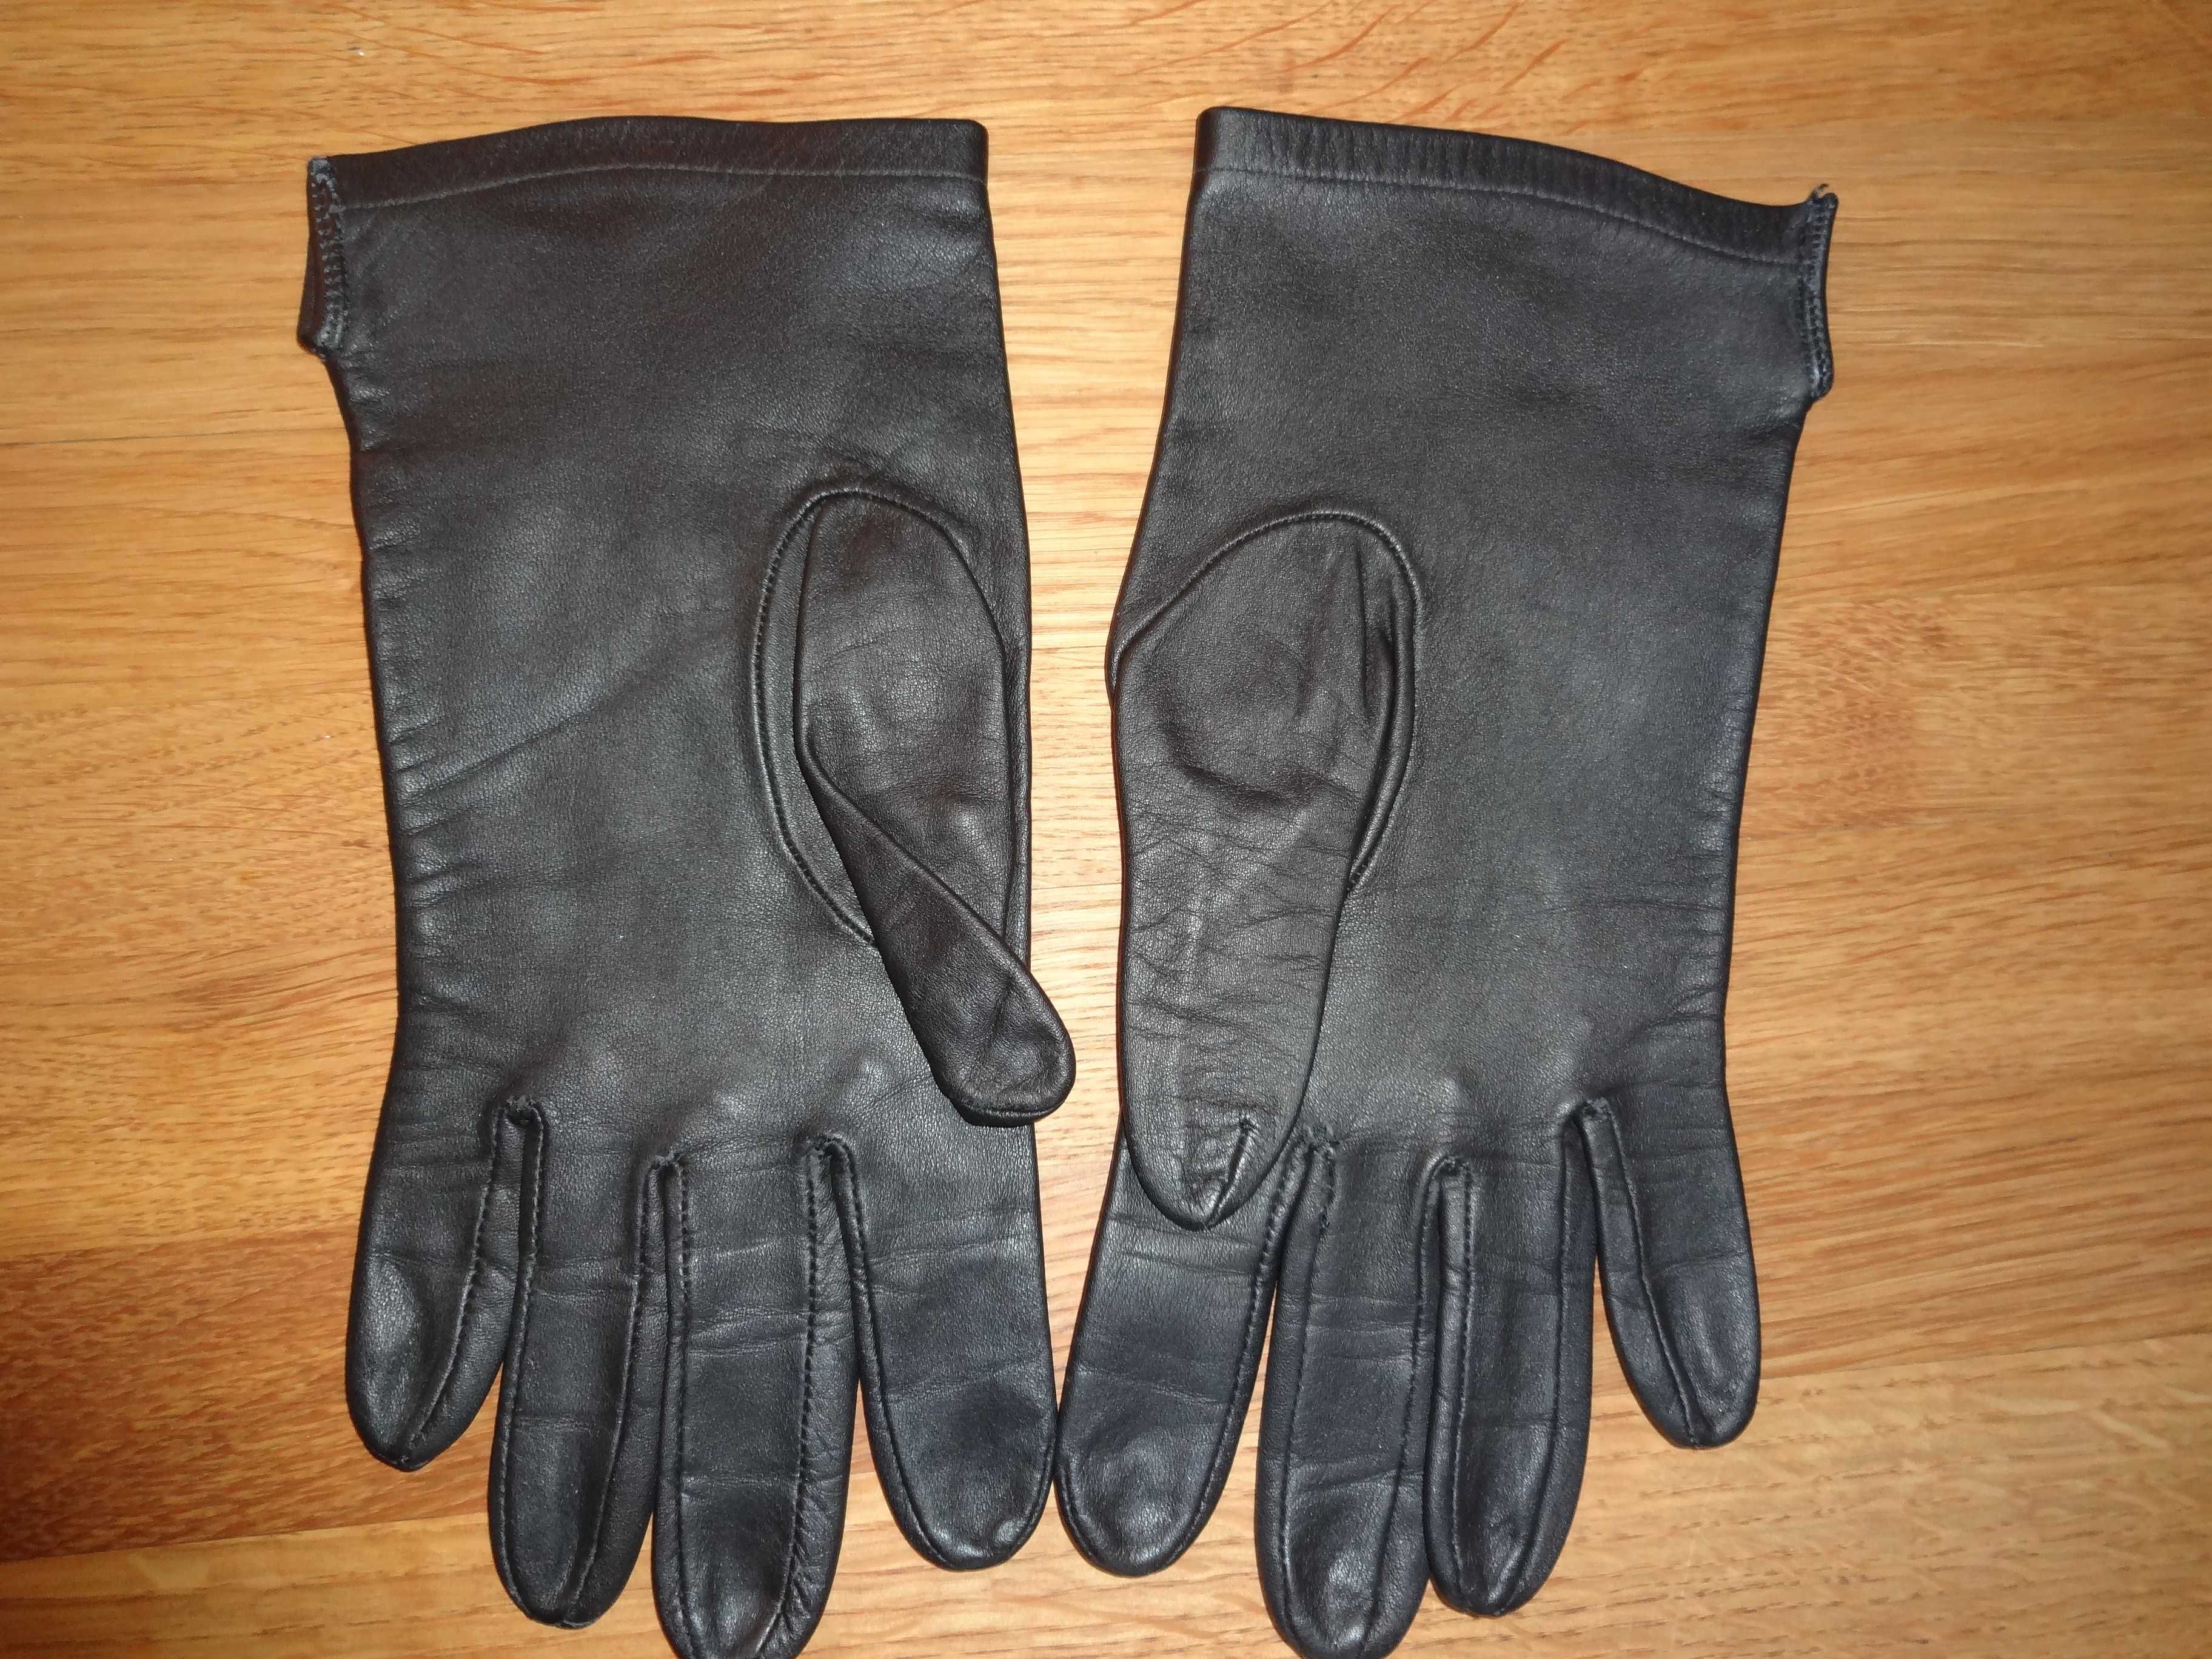 Rękawice czarne do munduru galowego (MON) rozmiar 22 "skórkowe"